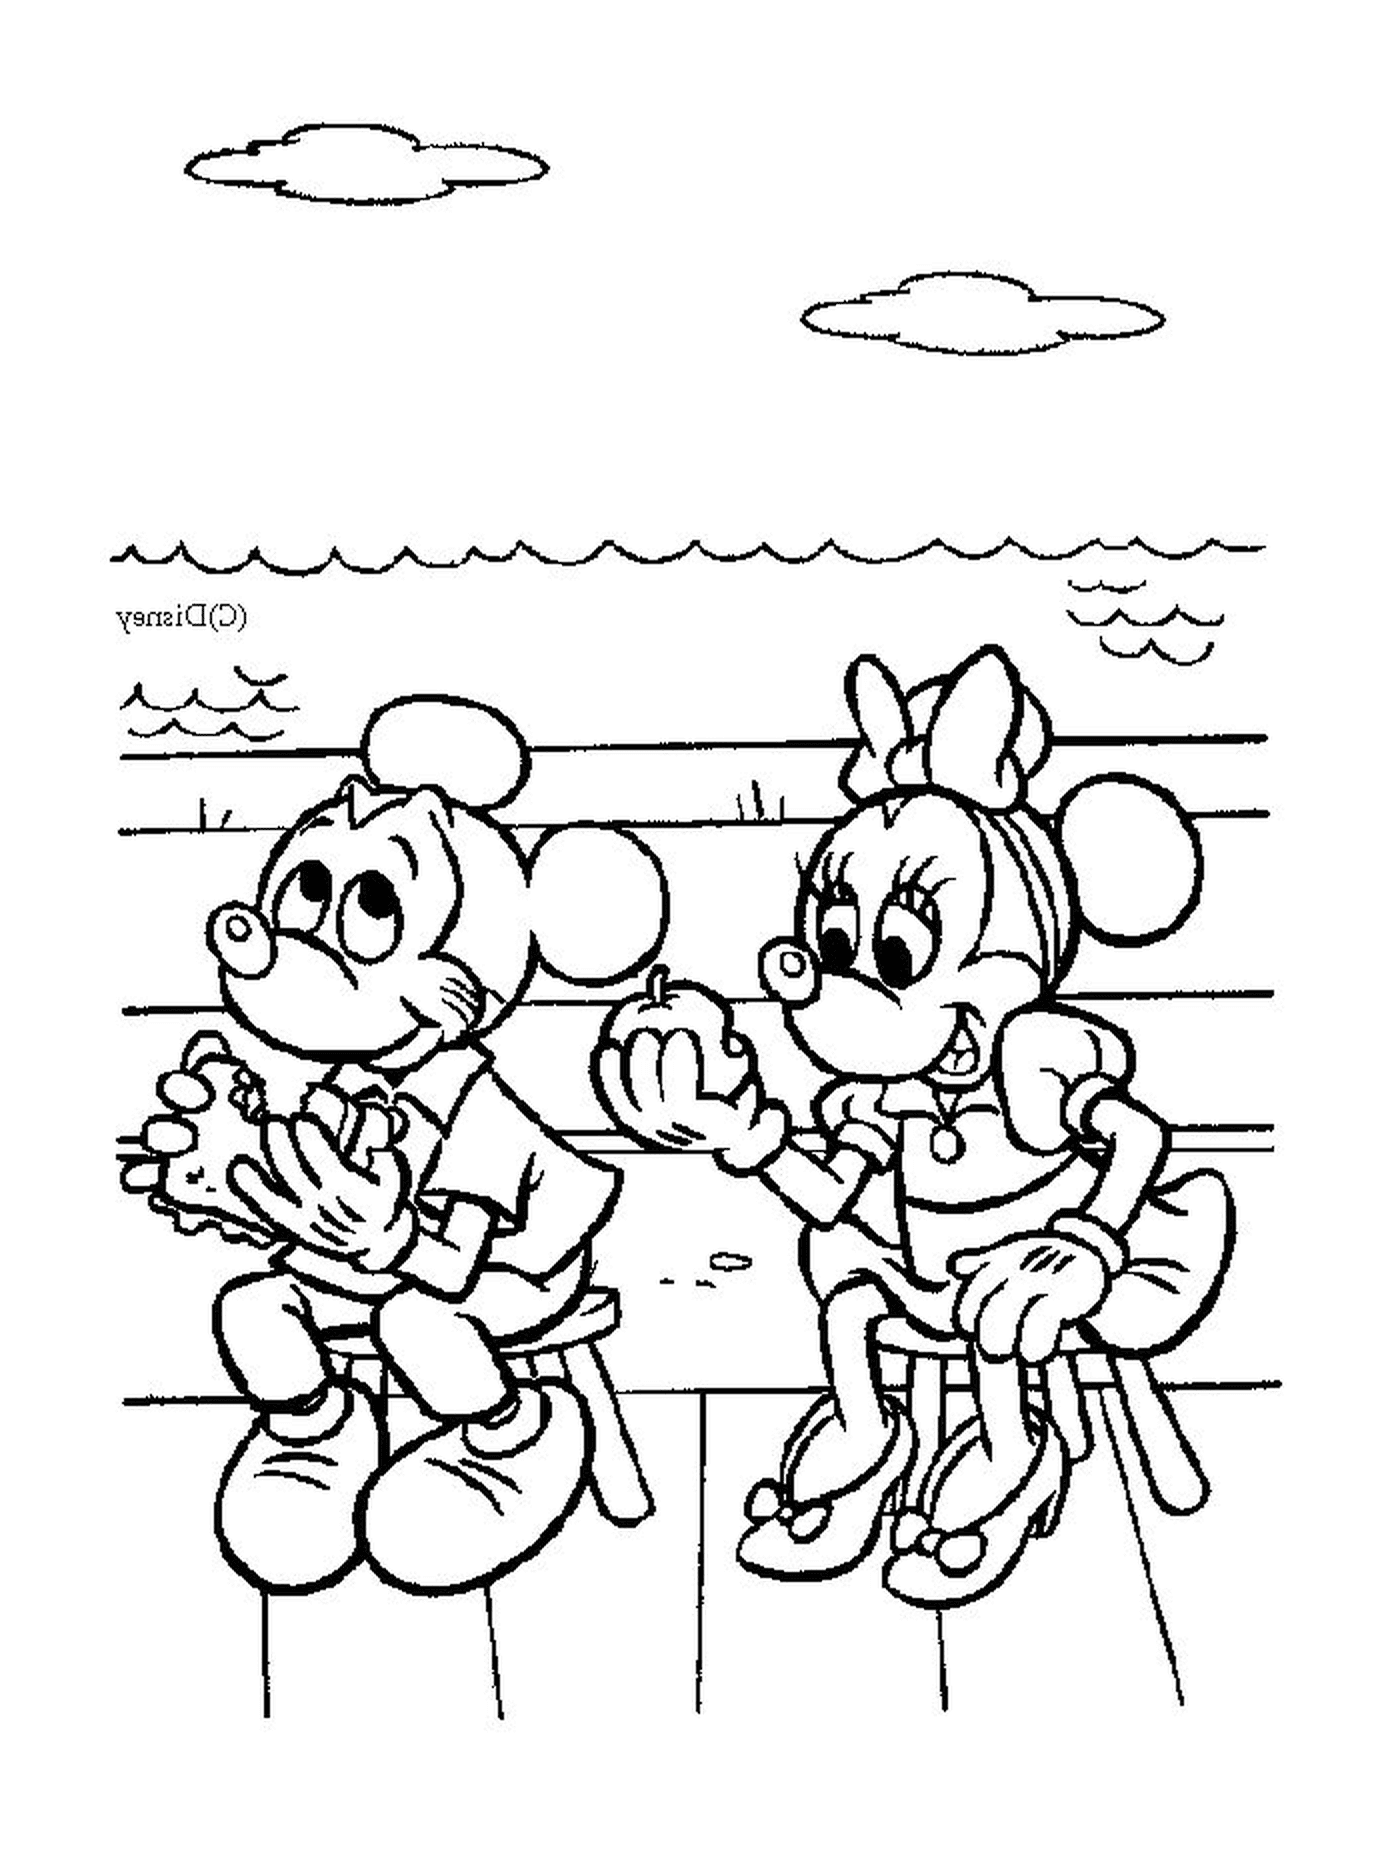  Микки Маус и Минни Маус сидят на скамейке 